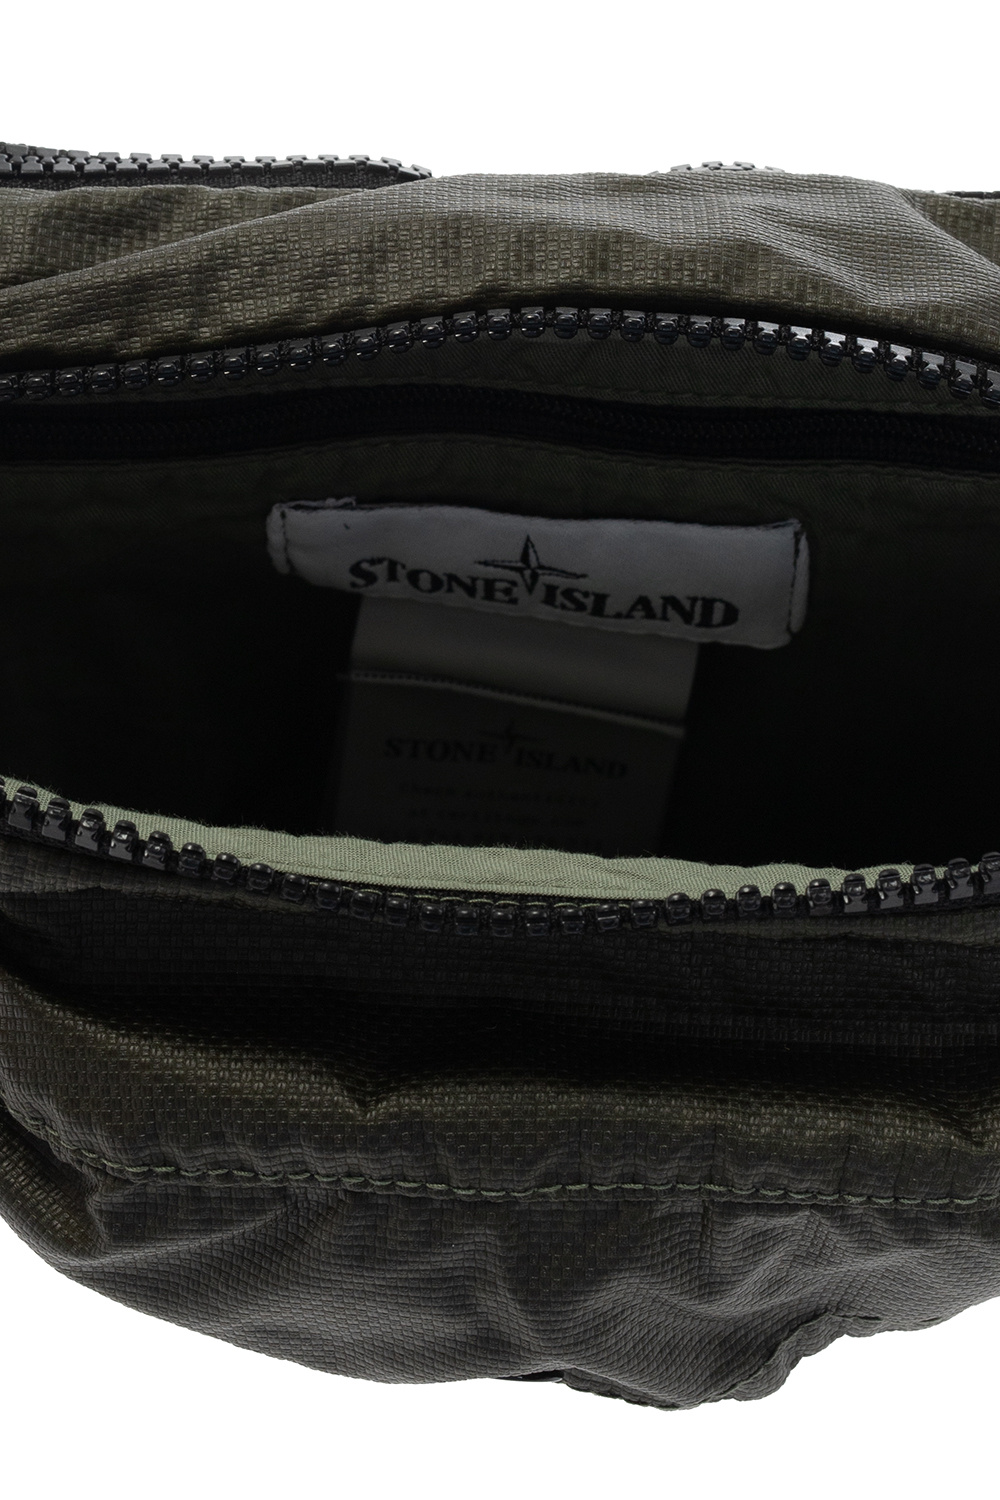 Stone Island Rucsac Backpack 3 Compartments N00710.11 Khaki